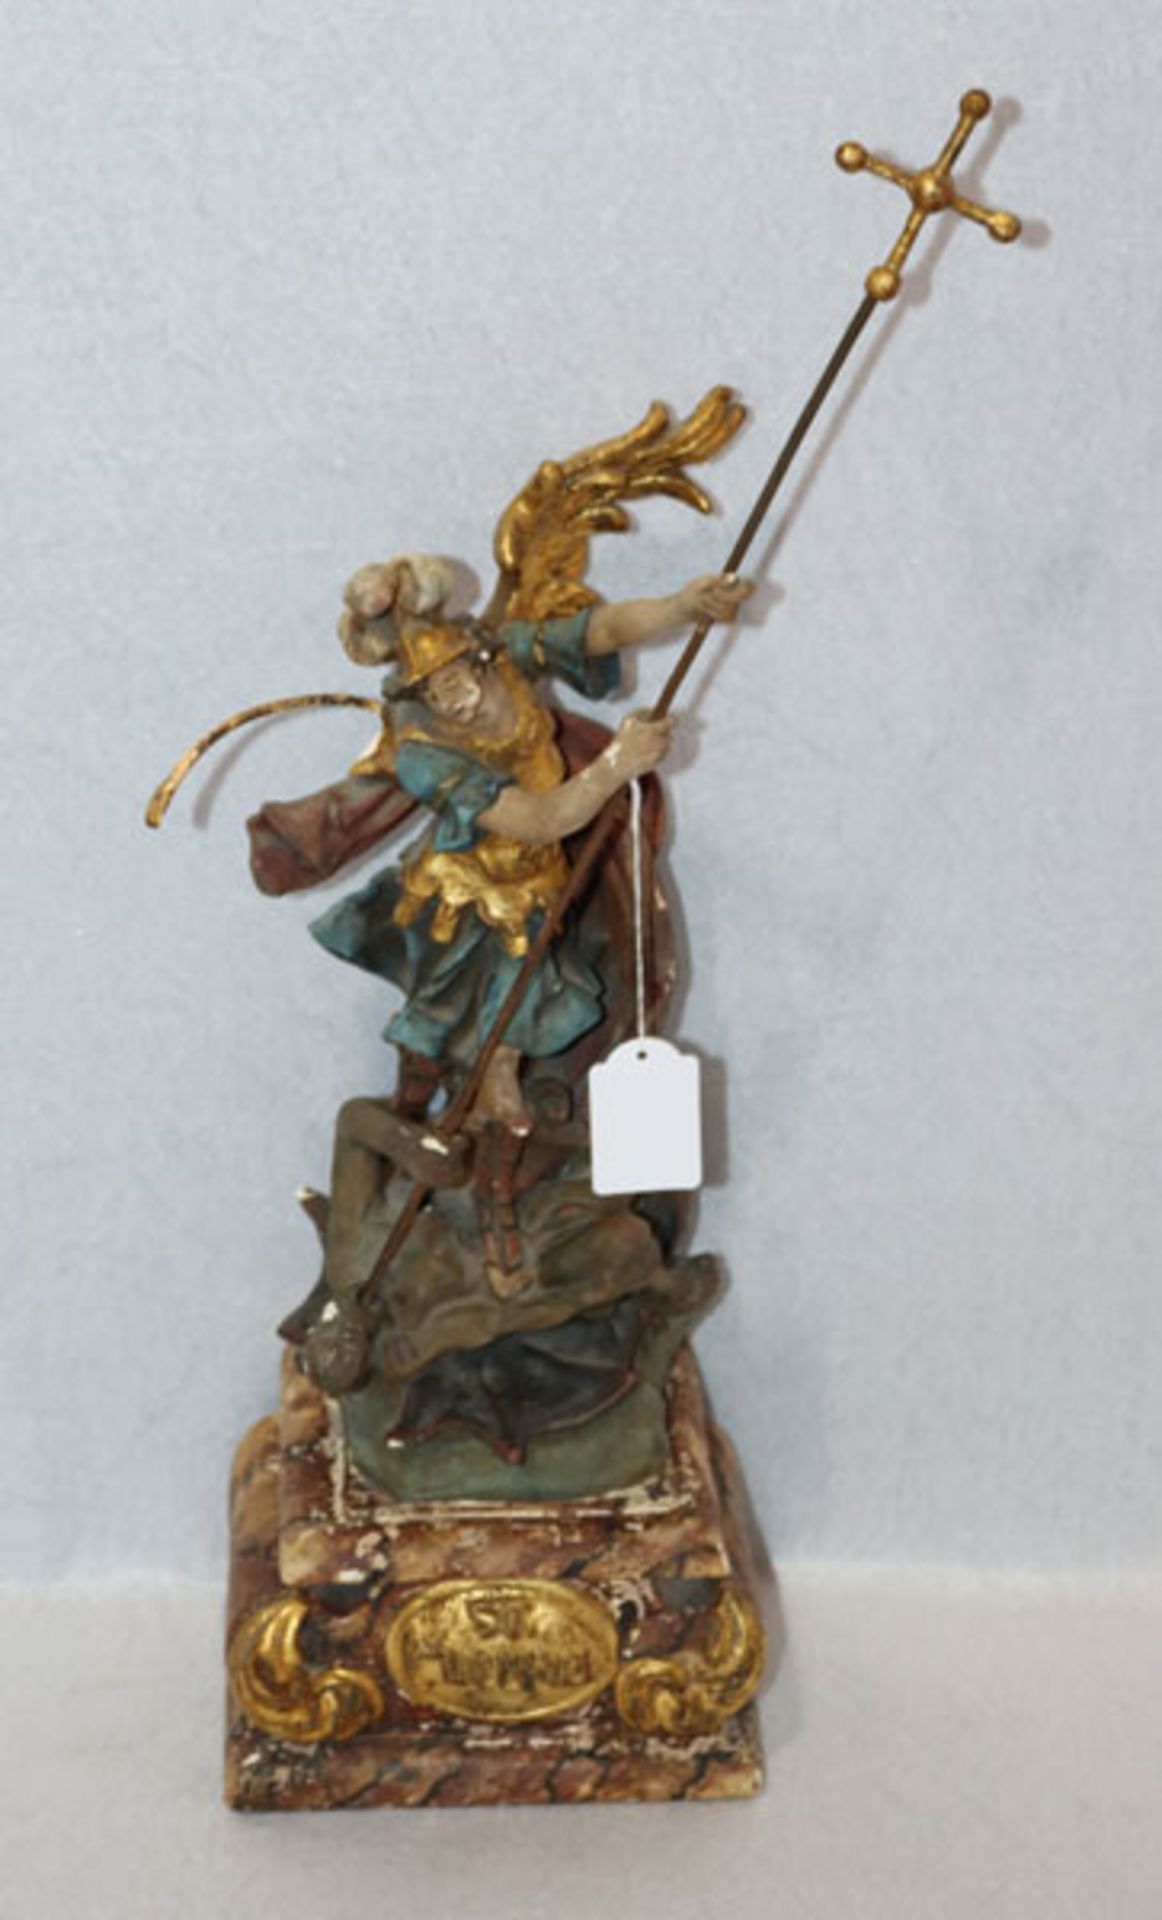 Gips Figurenskulptur 'St. Michael', auf Sockel, farbig gefaßt, 19. Jahrhundert, ein Flügel fehlt,